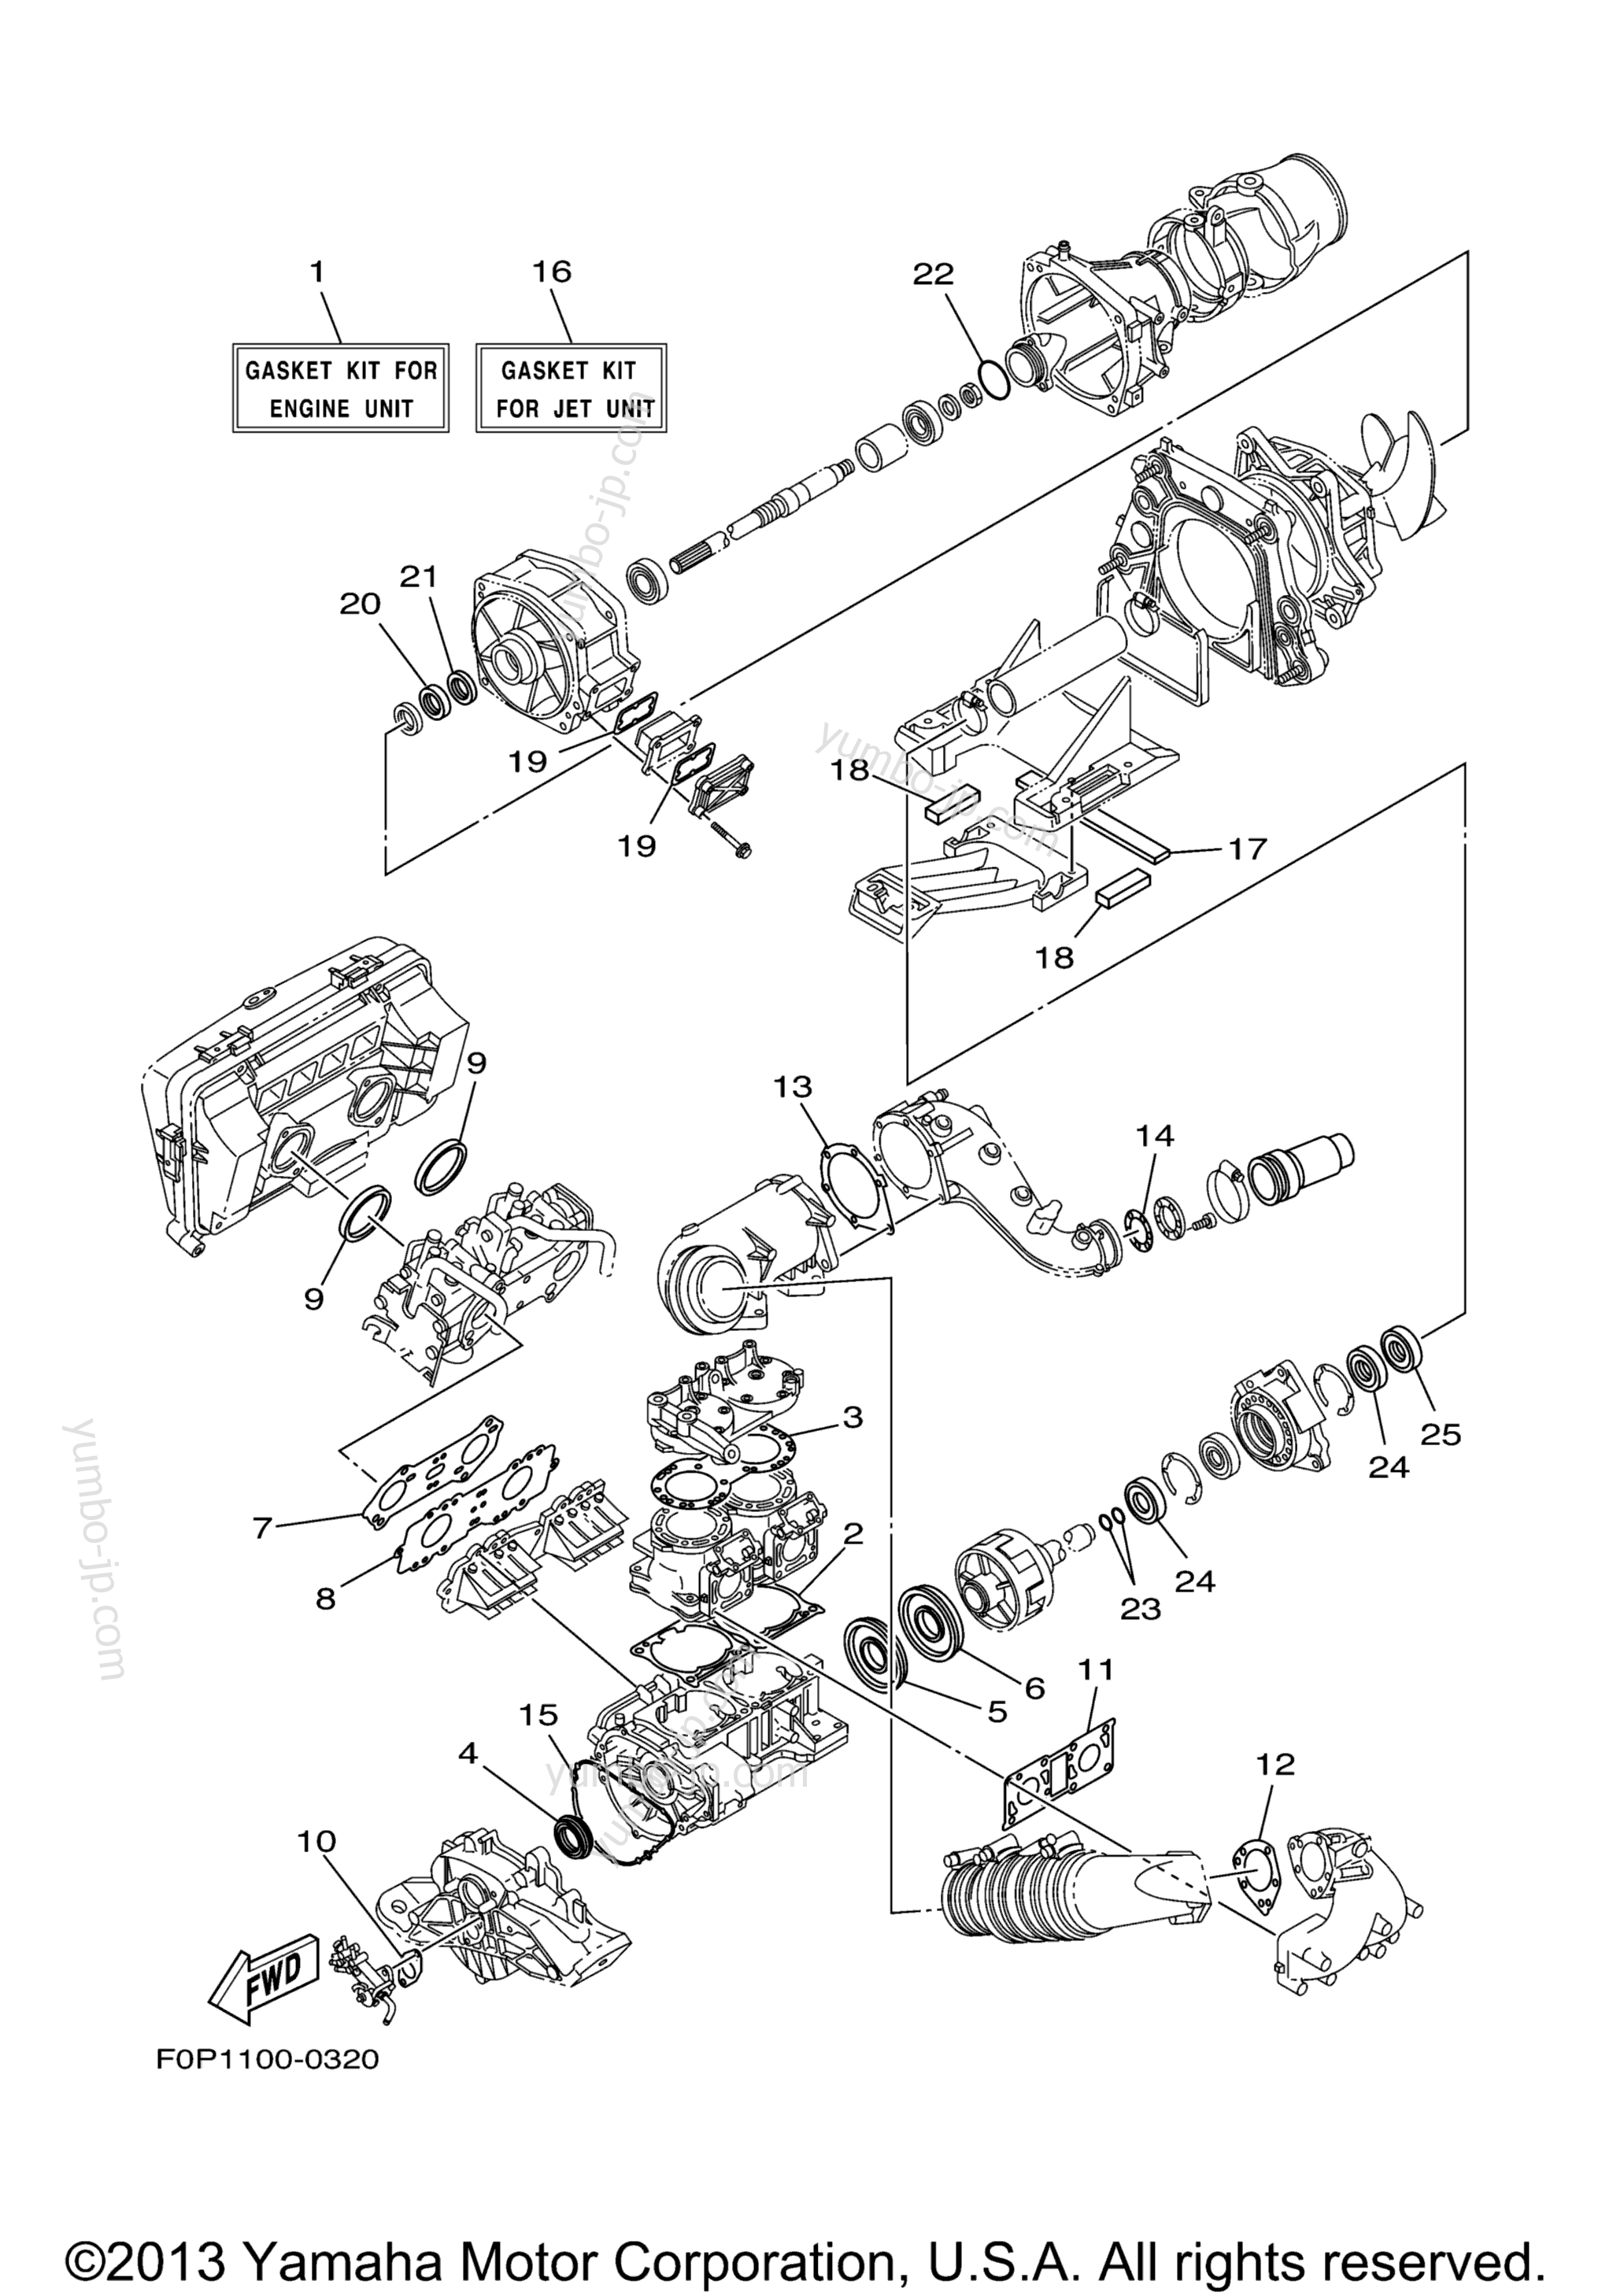 Repair Kit 1 для гидроциклов YAMAHA XLT800 (XA800AA) 2002 г.